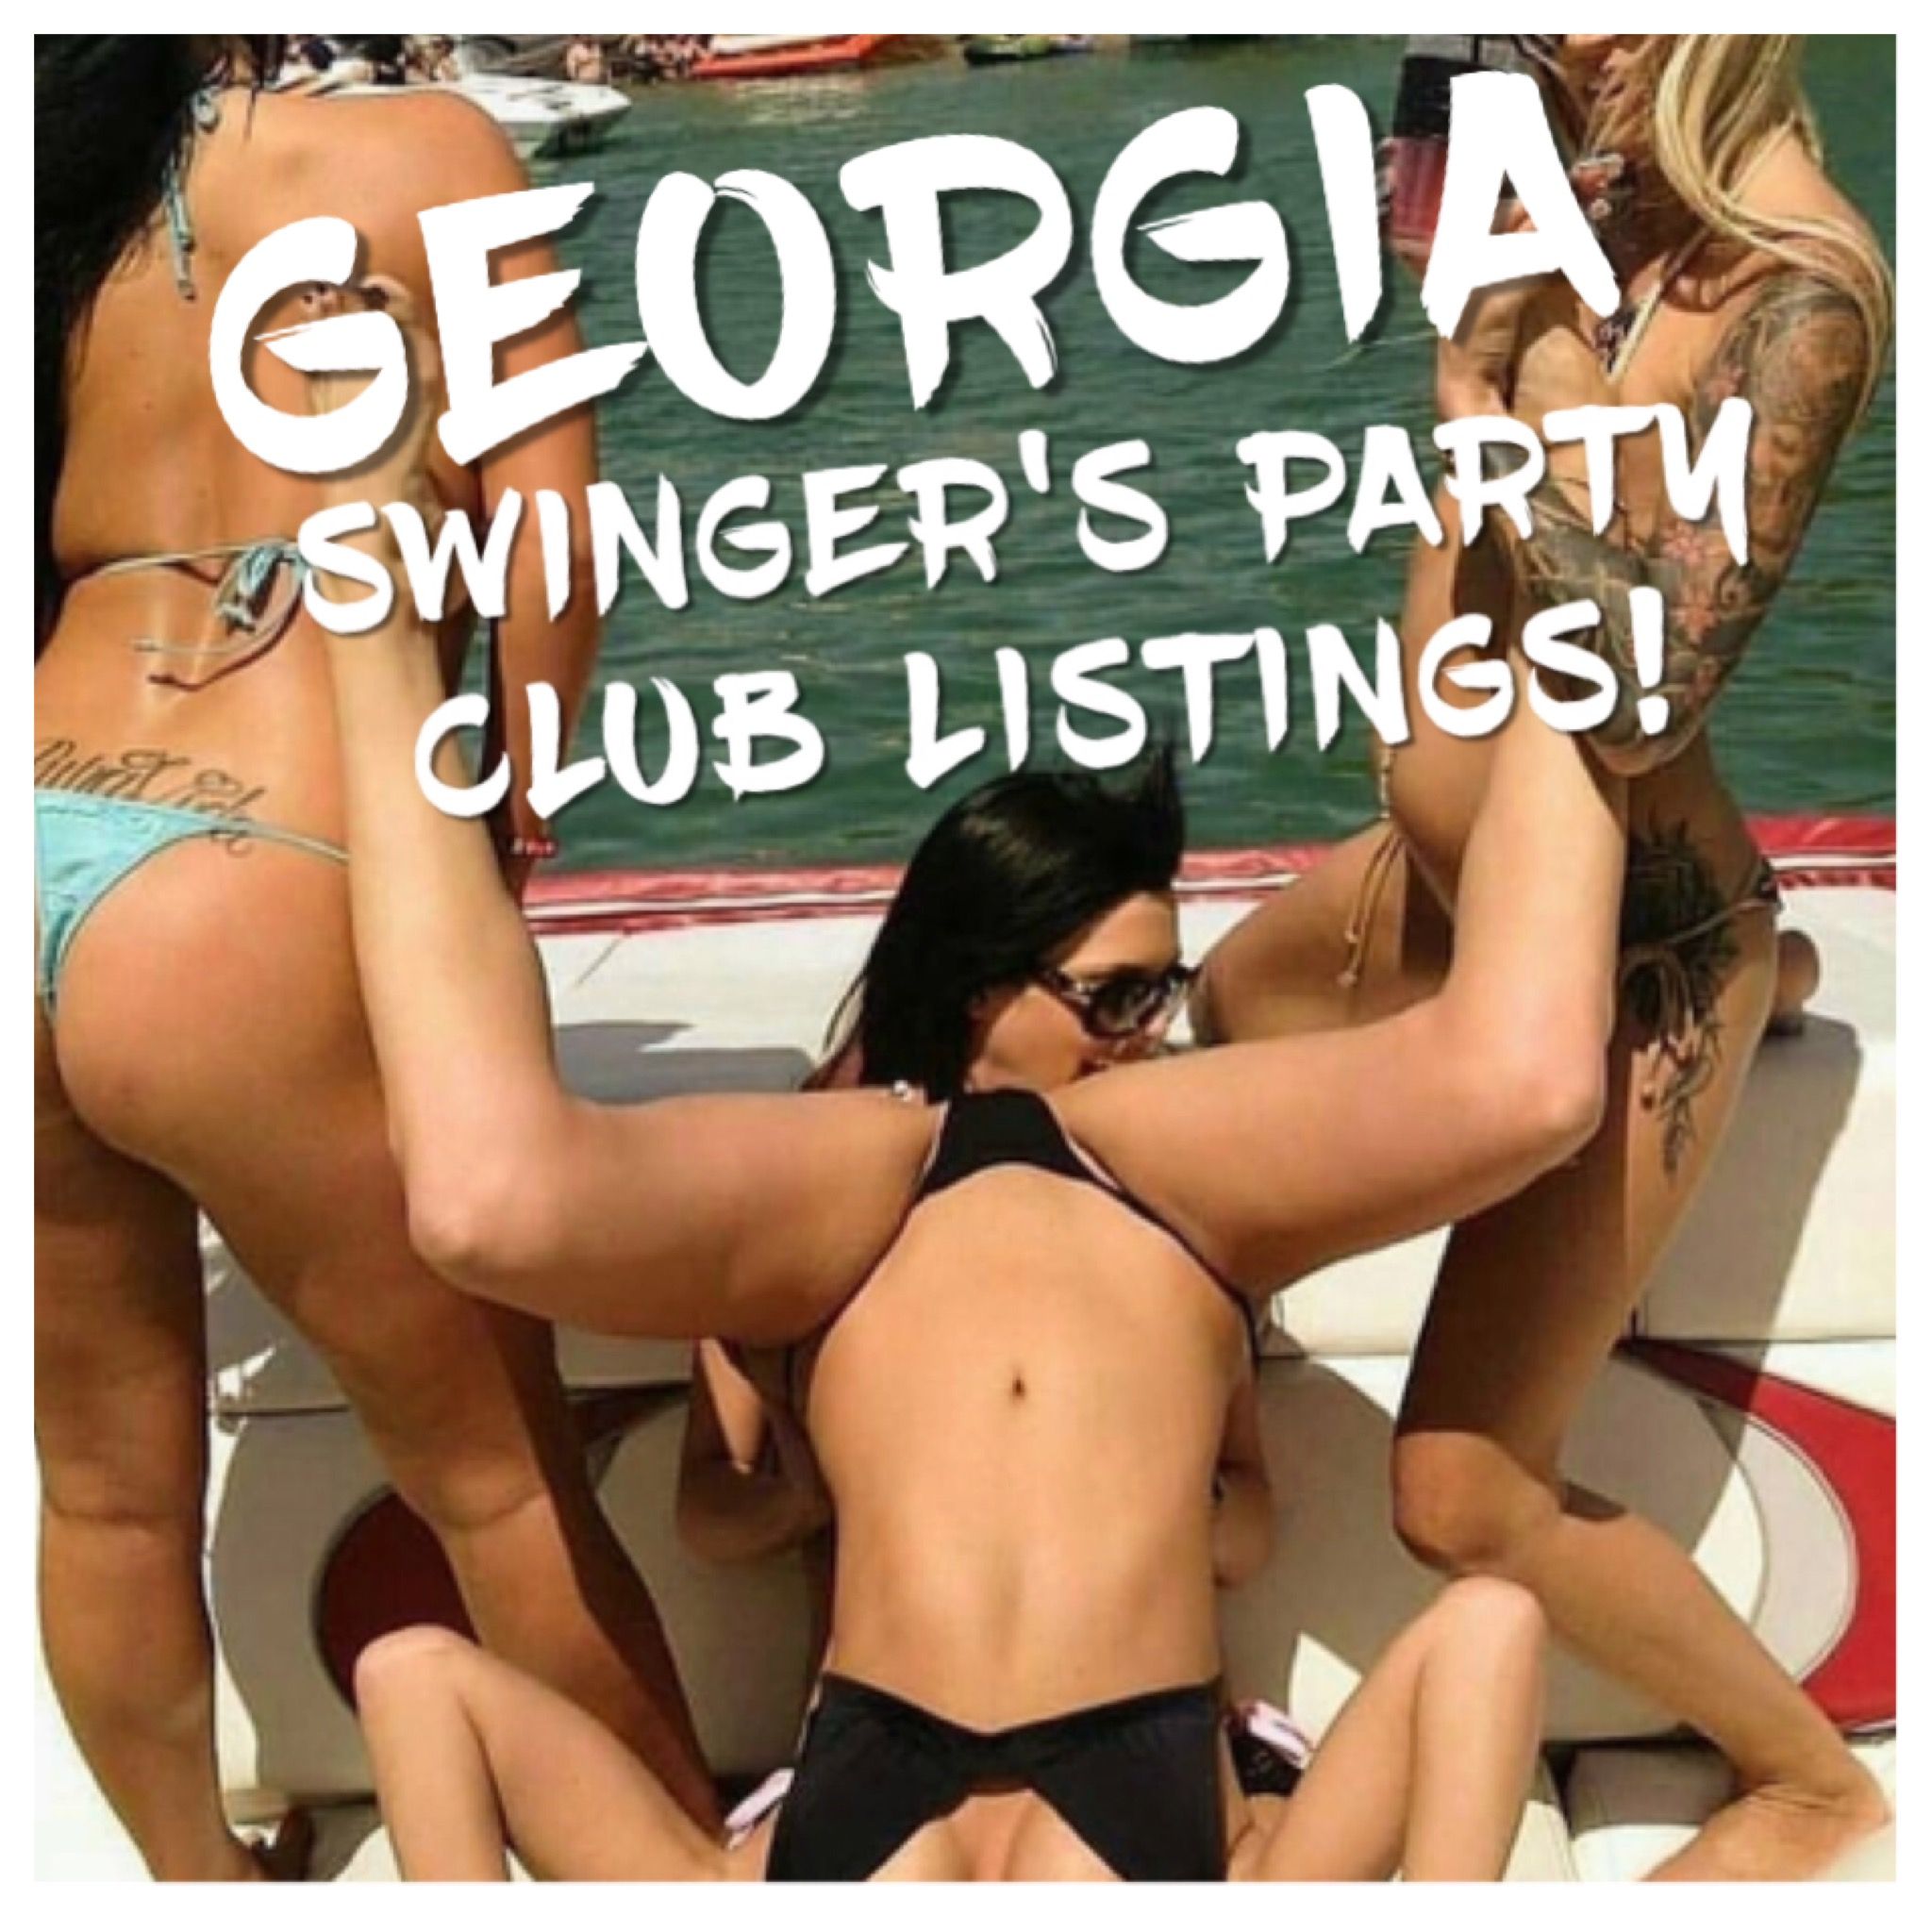 Free nj swinger parties listings  Foto